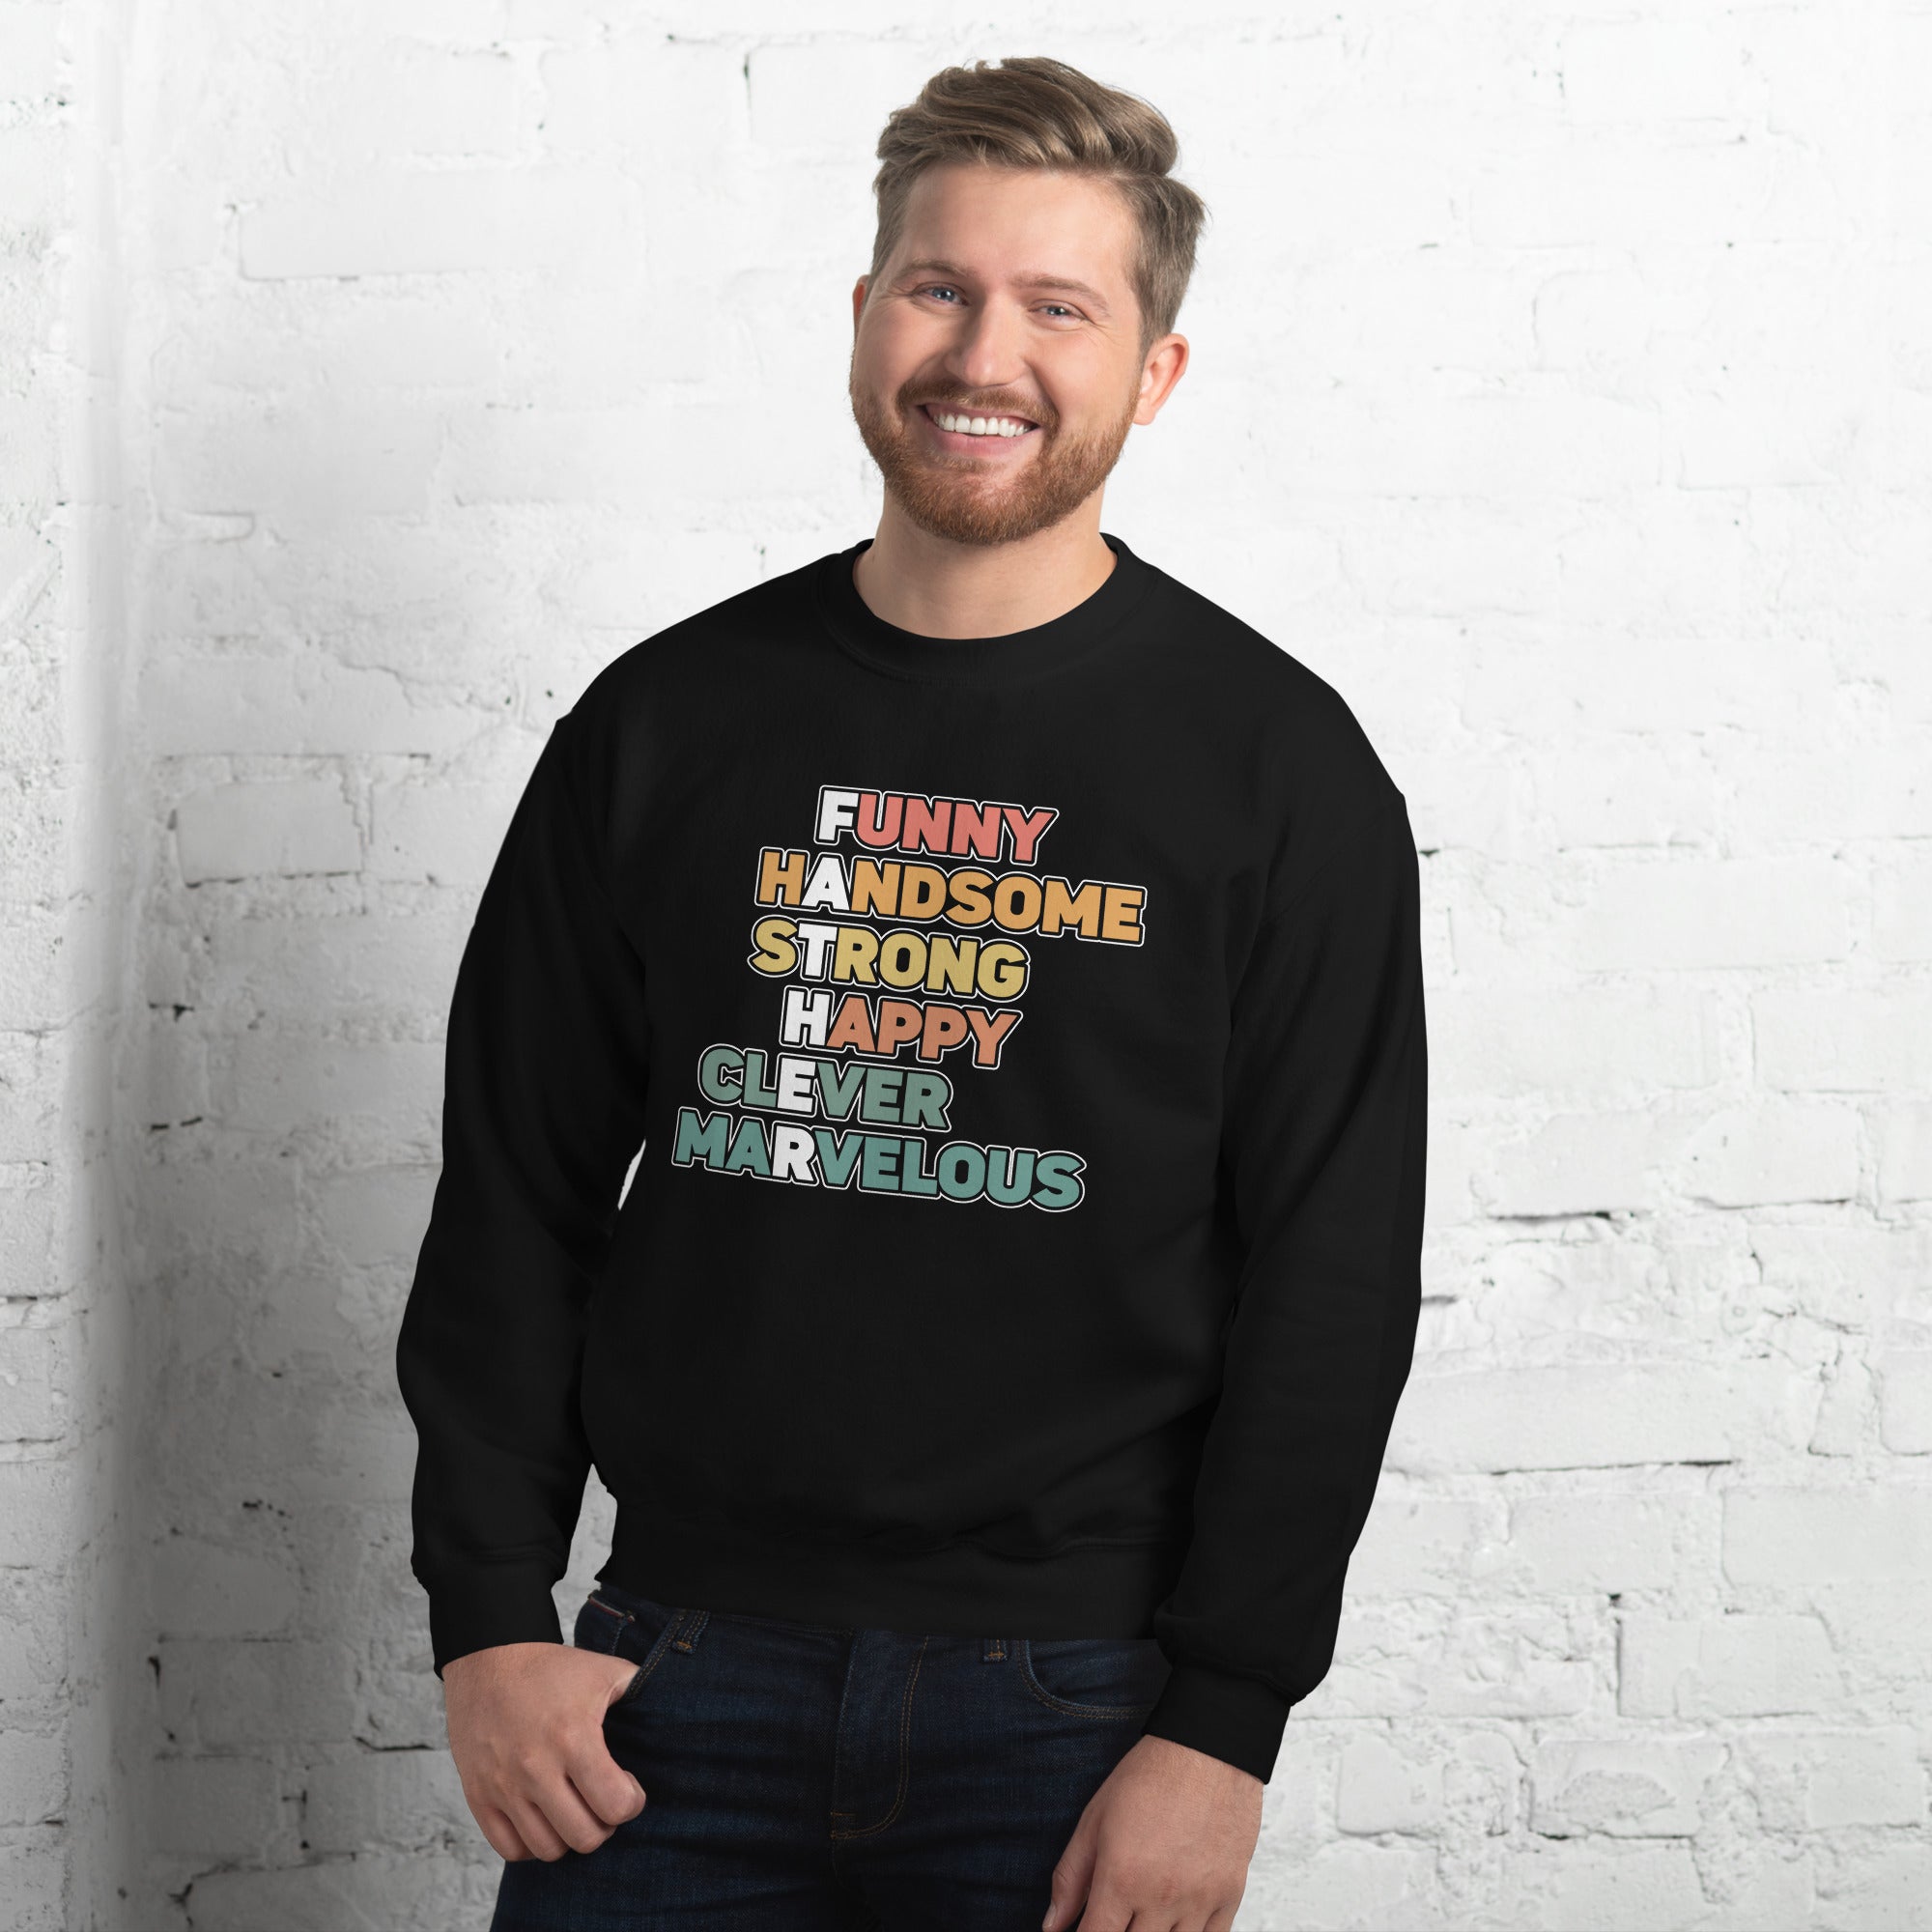 Funny Happy Strong Handsome Clever Marvelous Men's Sweatshirt